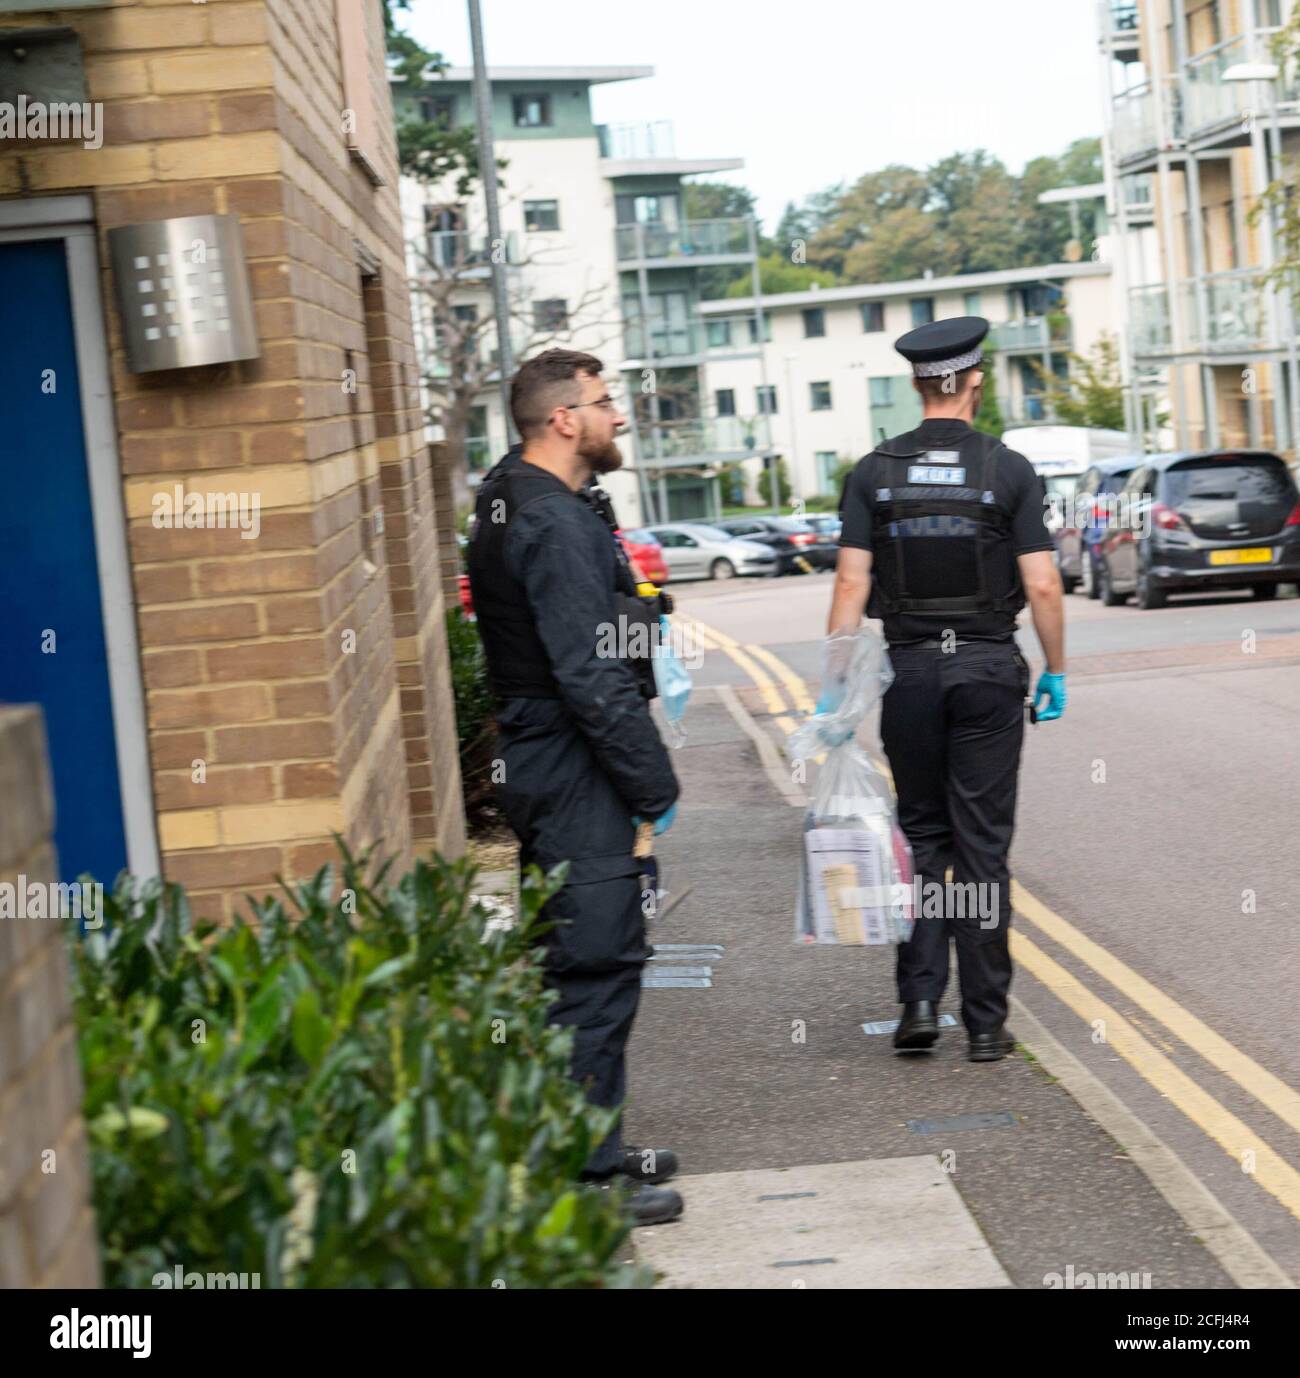 Brentwood Essex 5 settembre 2020 seguito di un raid di droga da parte della polizia Essex a Brentwood Essex Credit: Ian Davidson/Alamy Live News Foto Stock